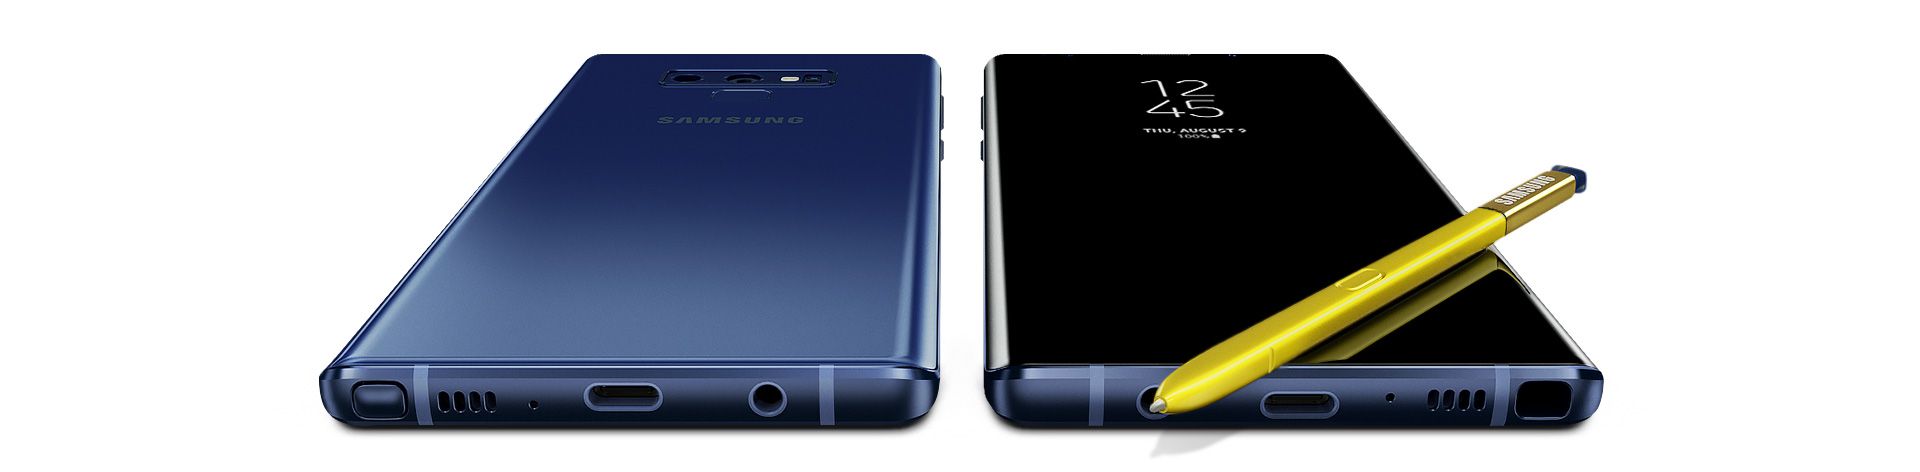 Två Galaxy Note9, en sedd från baksidan och andra sett från framsidan, med S Pen liggandes på skärmen